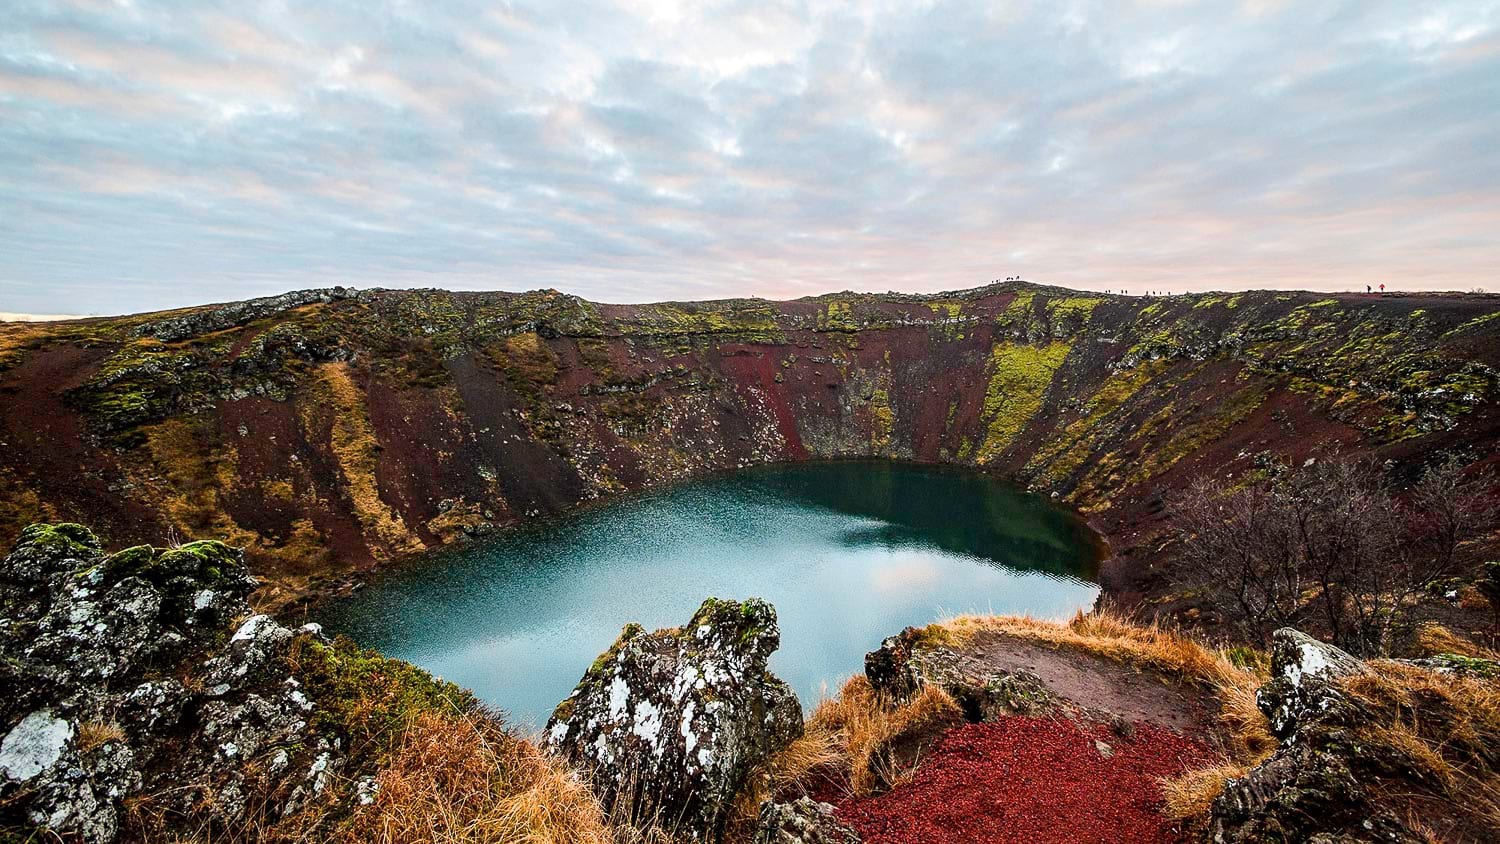 Kerid volcano crater